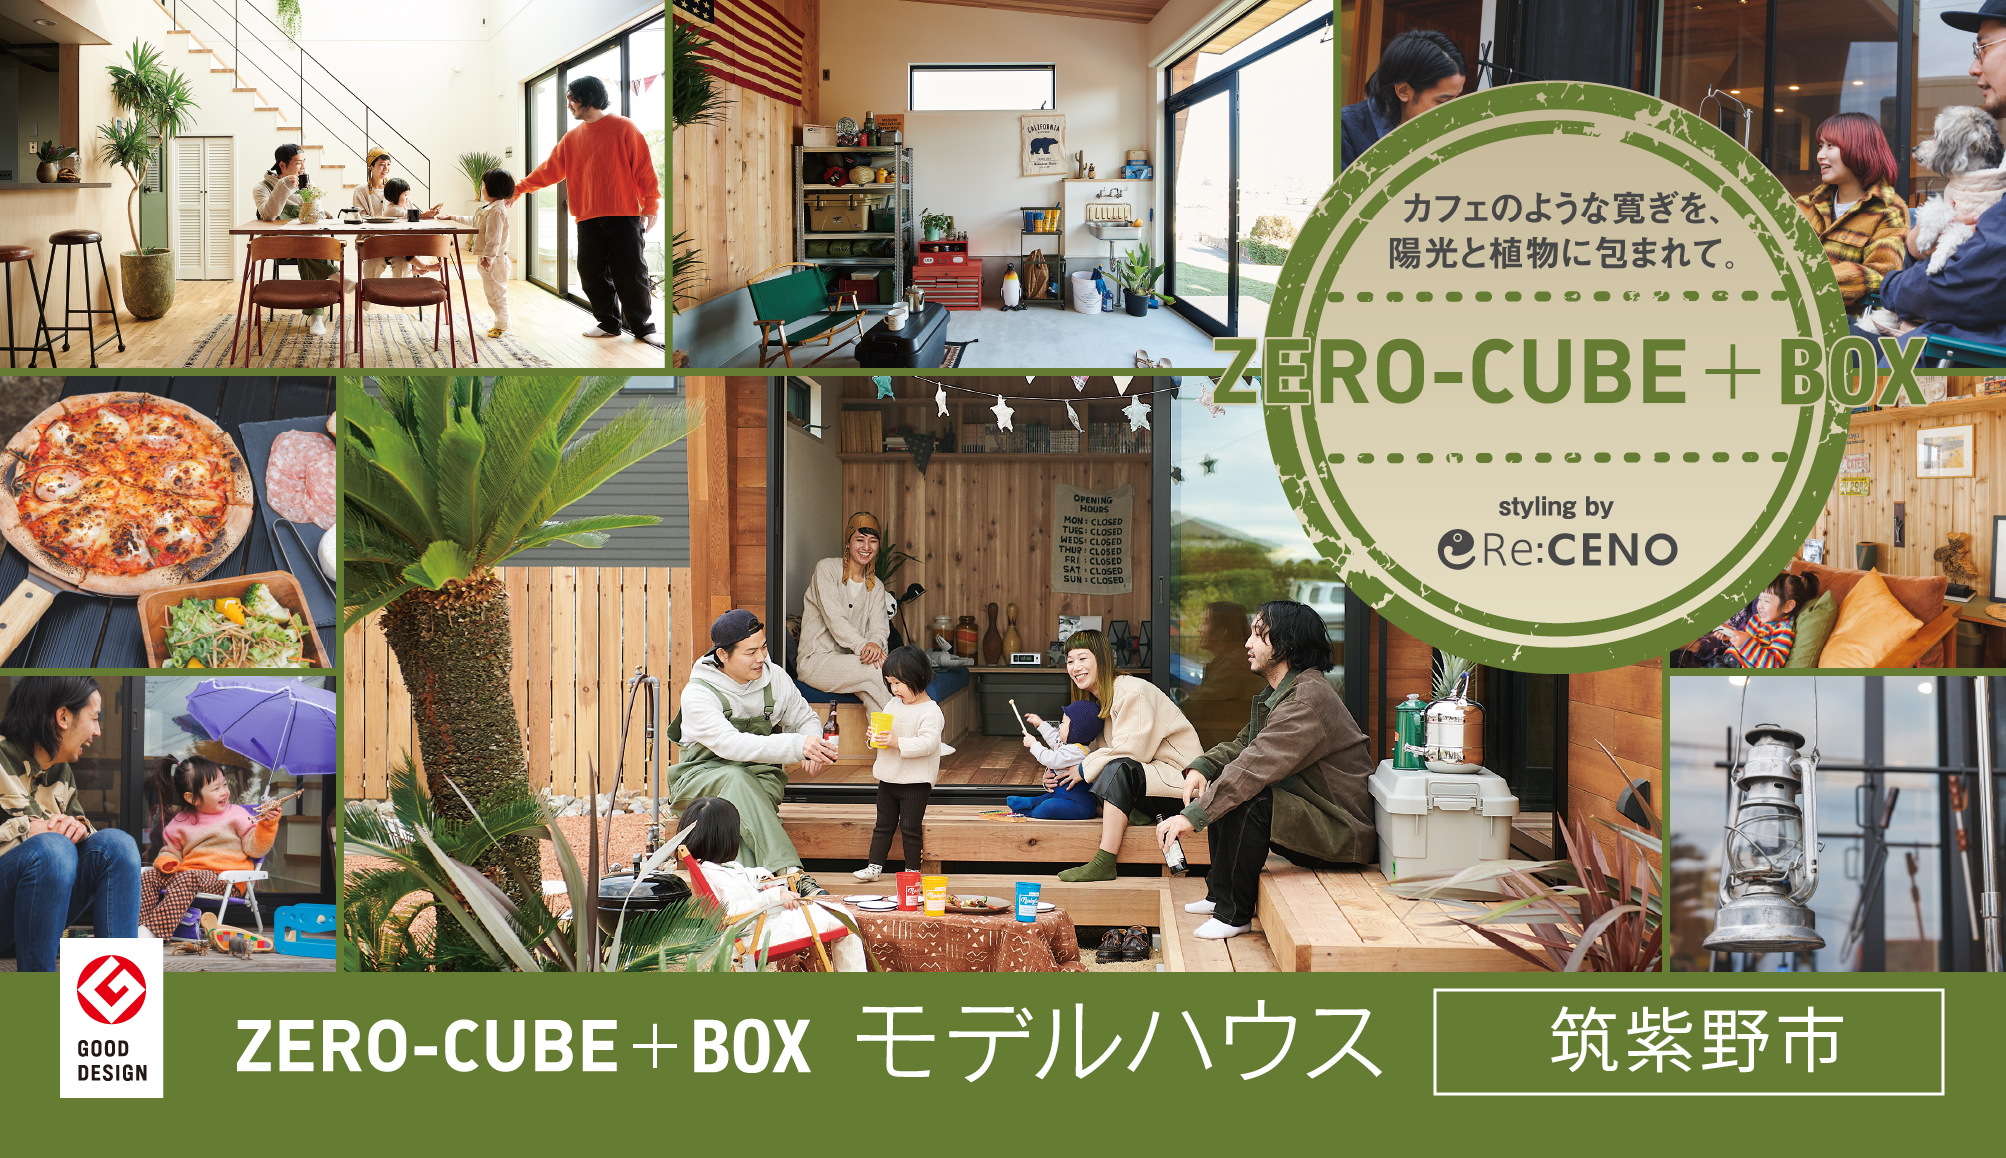 筑紫野市 ZERO-CUBE+BOX